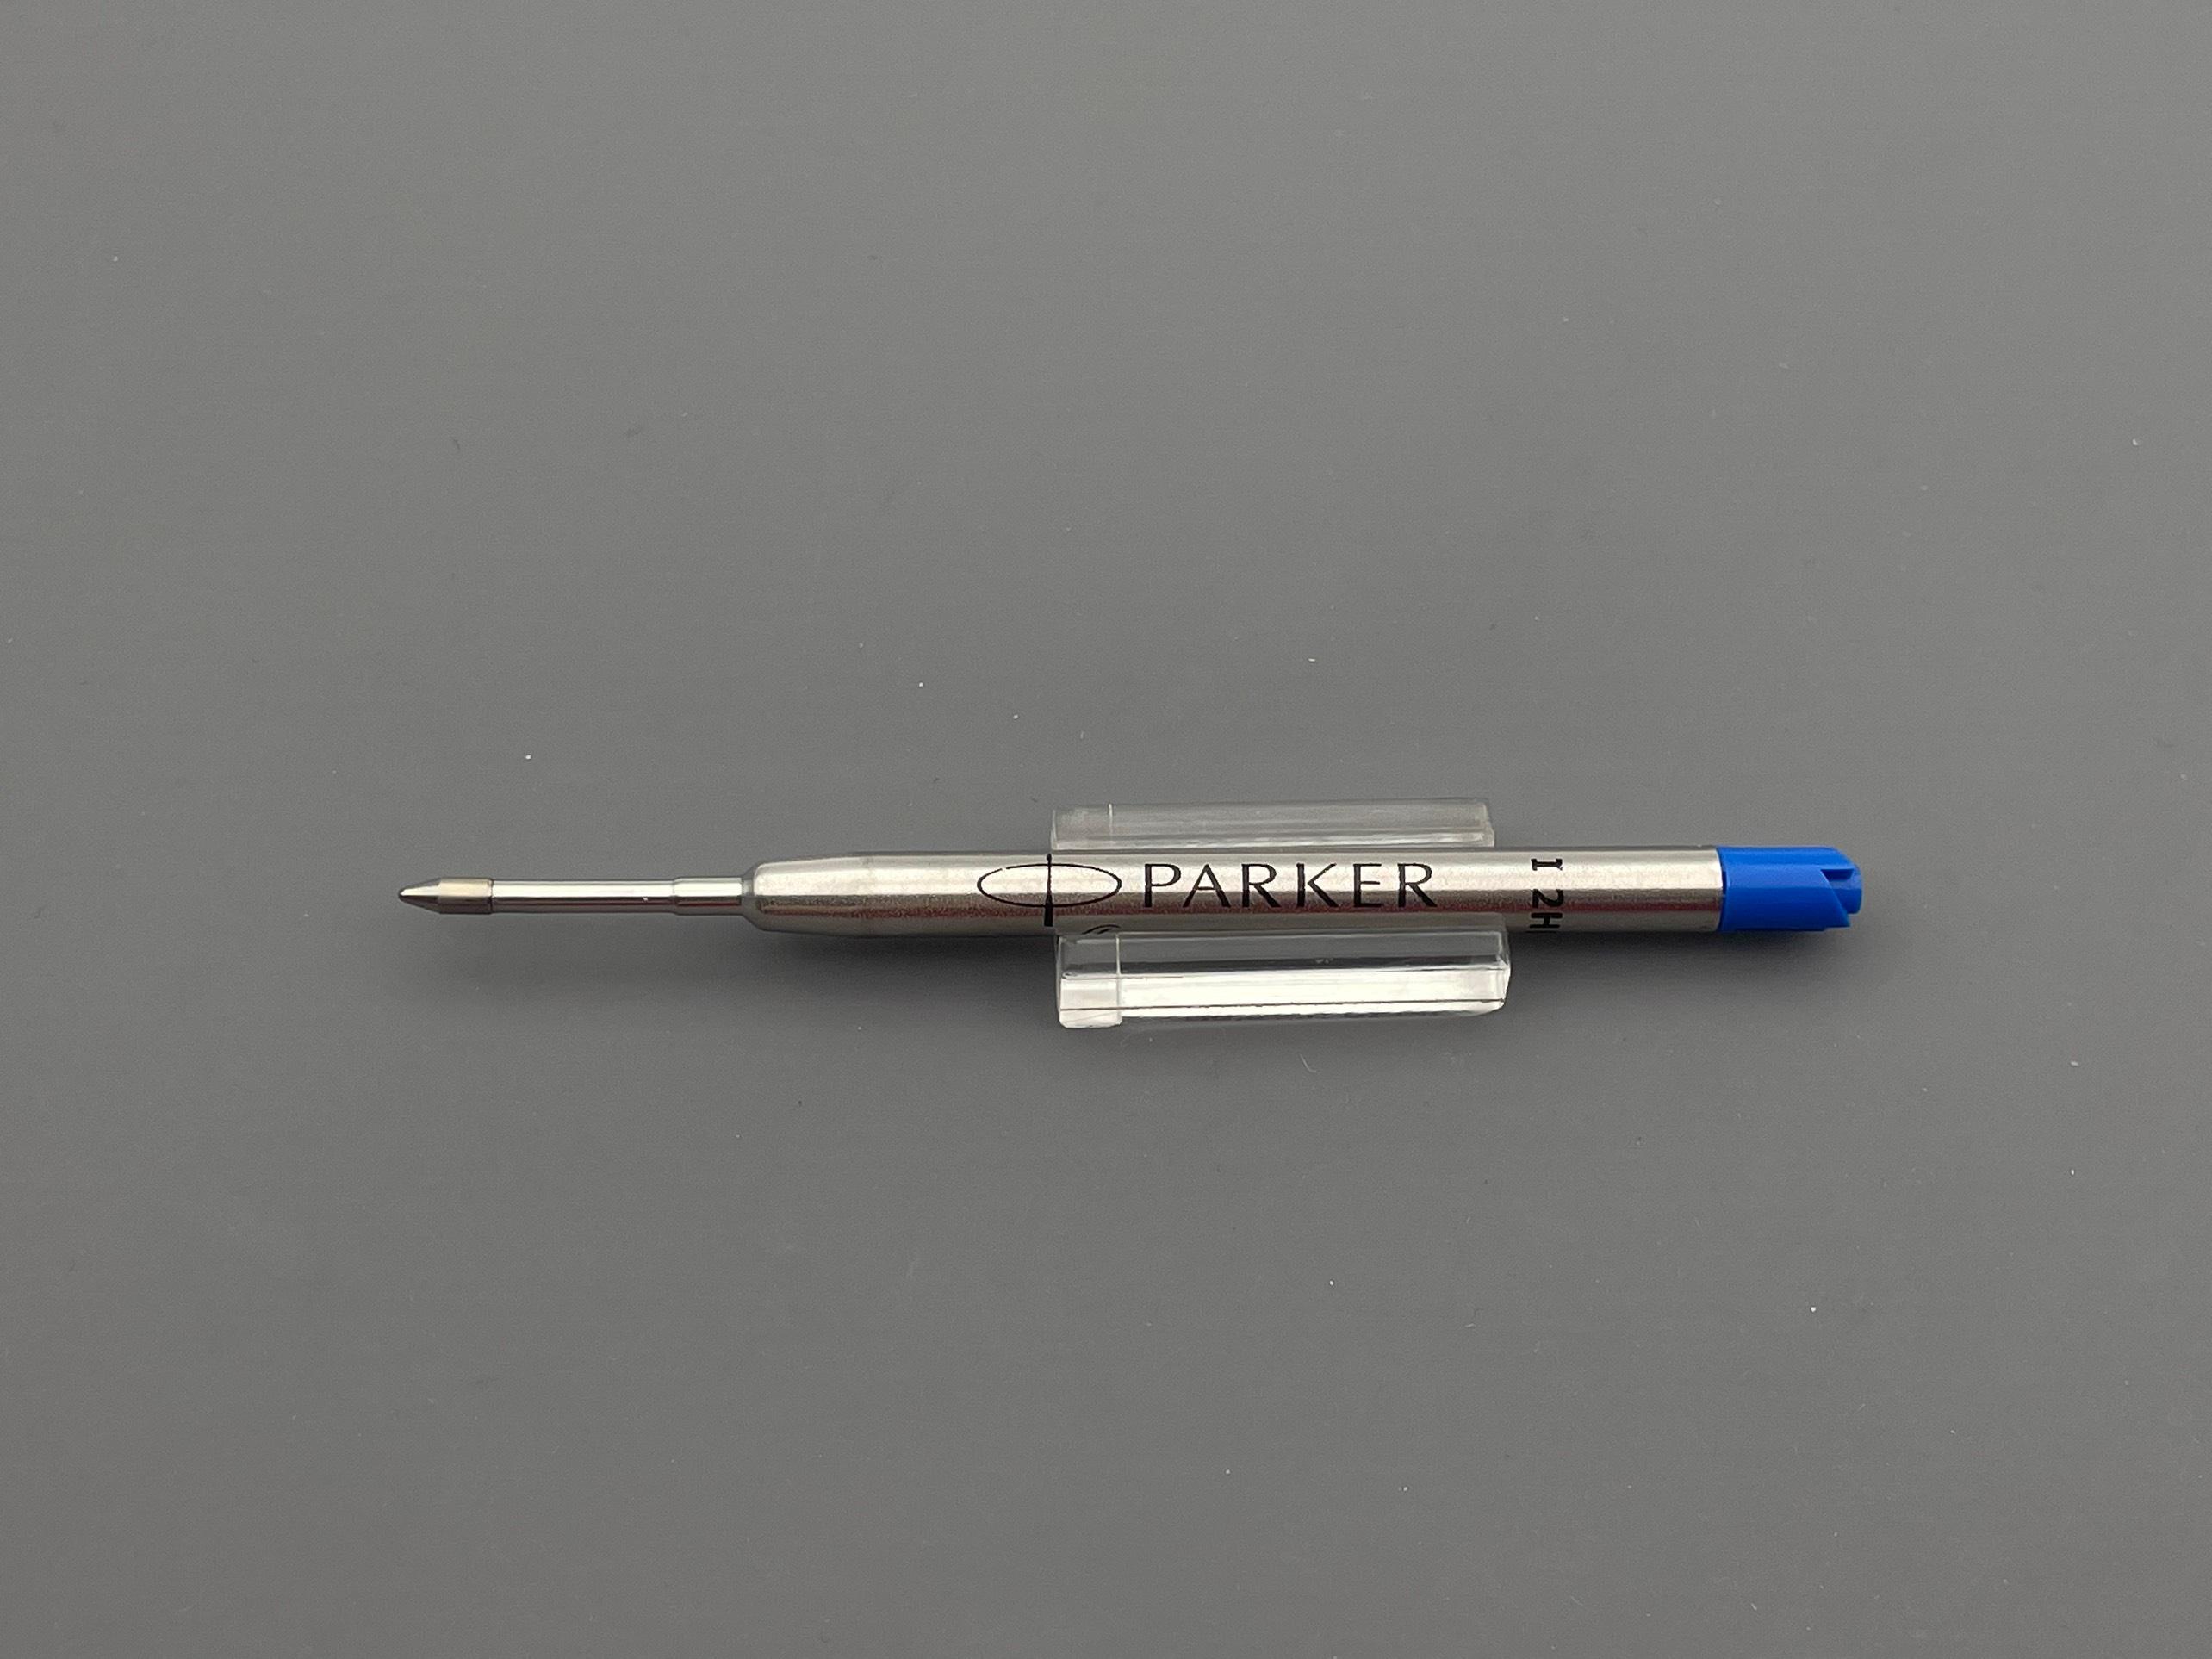 Ruột bút Parker Quinflow màu xanh phổ thông có bao bì